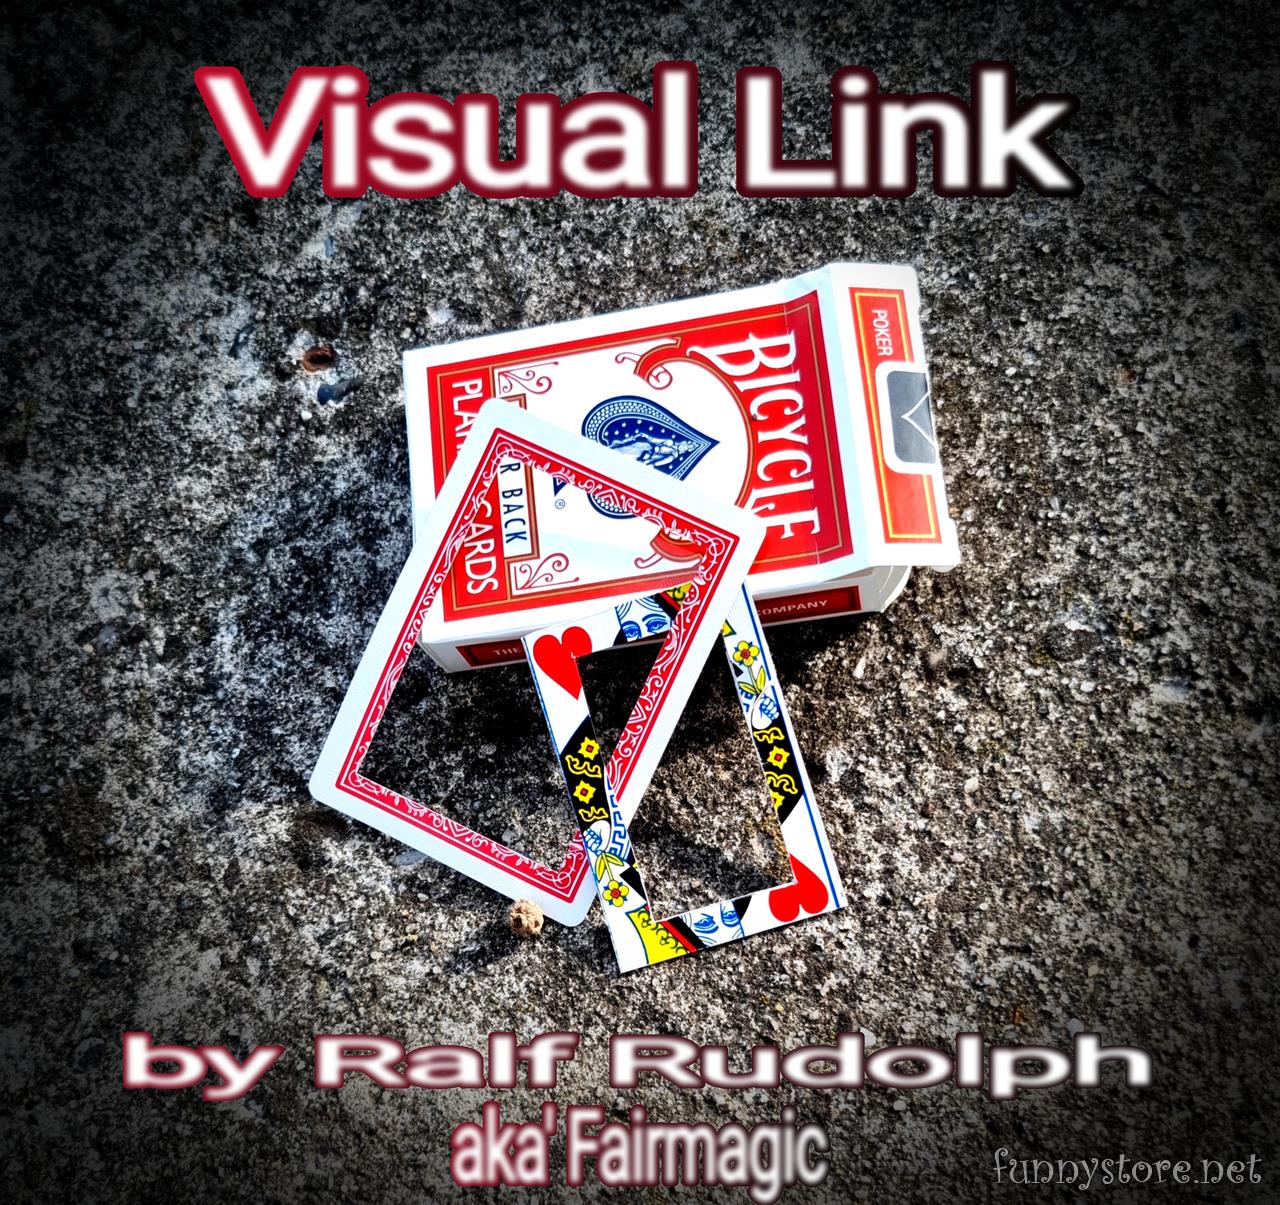 Ralf Rudolph aka'Fairmagic - Visual Link